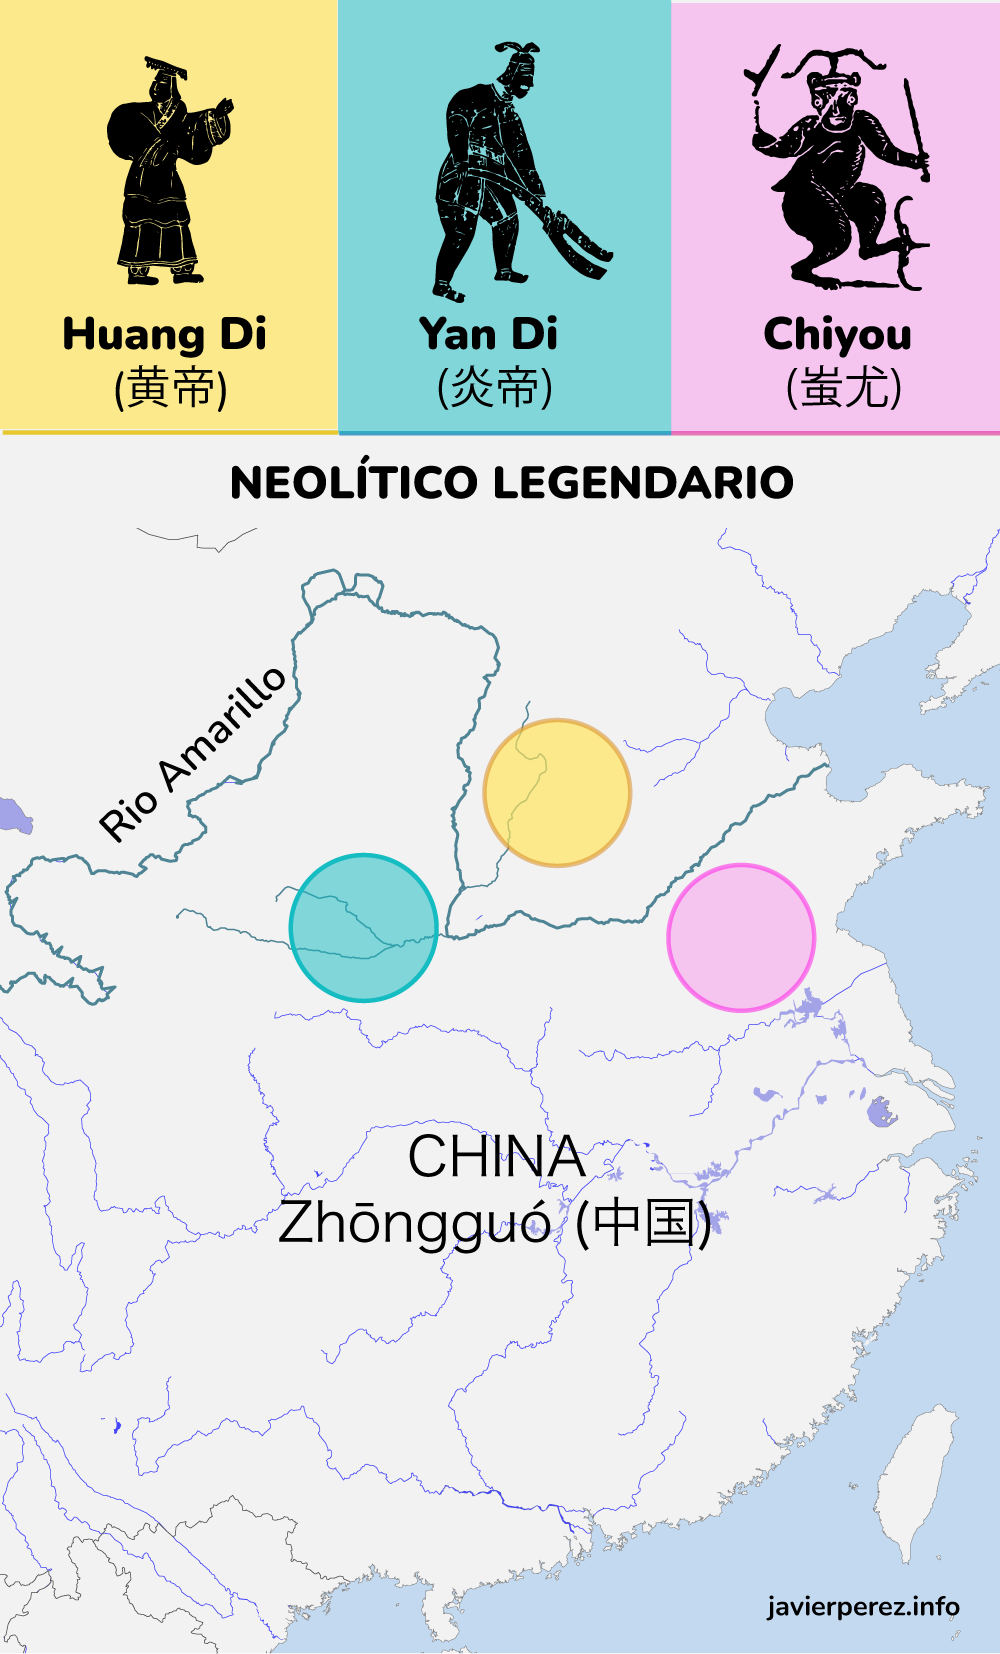 Tribus del neolítico legendario en Zhonguo, la palabra que designa a China. Mapa de javierperez.info